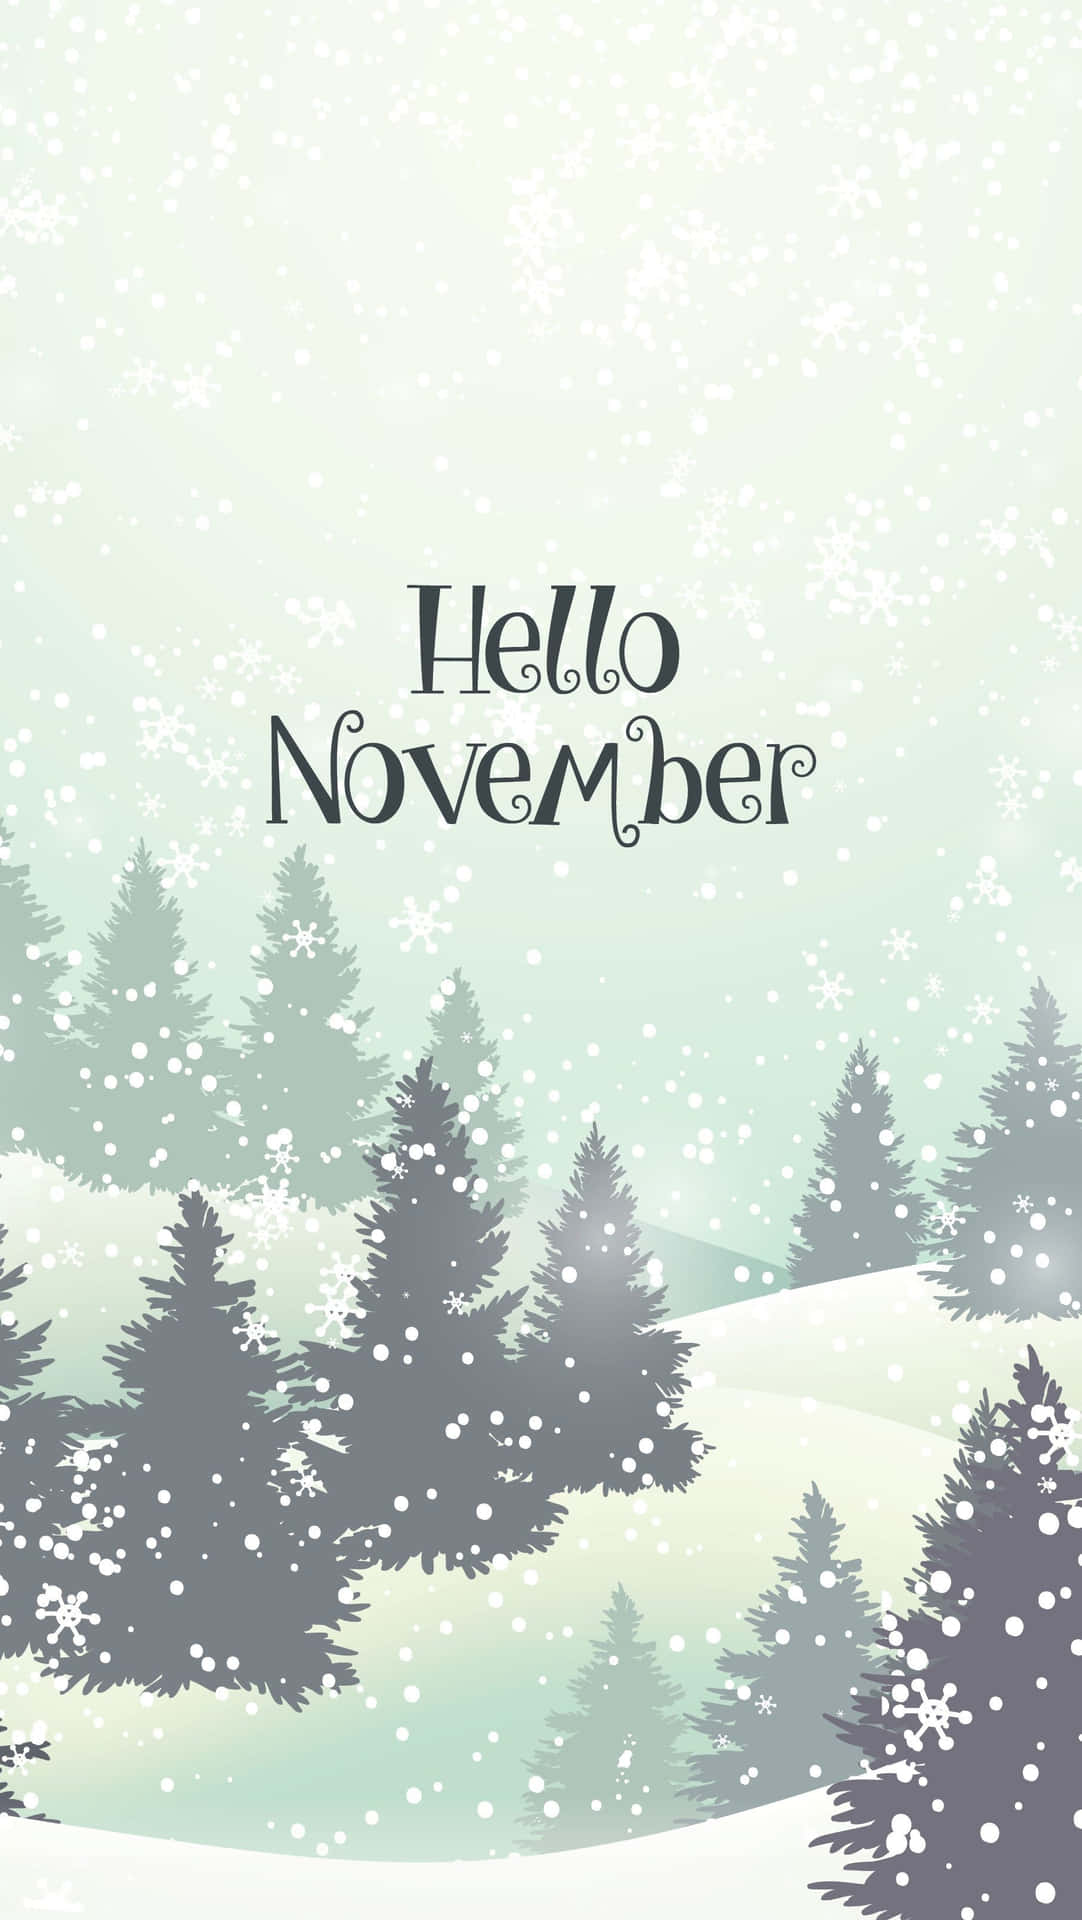 Nydde Køligere Temperaturer I November.